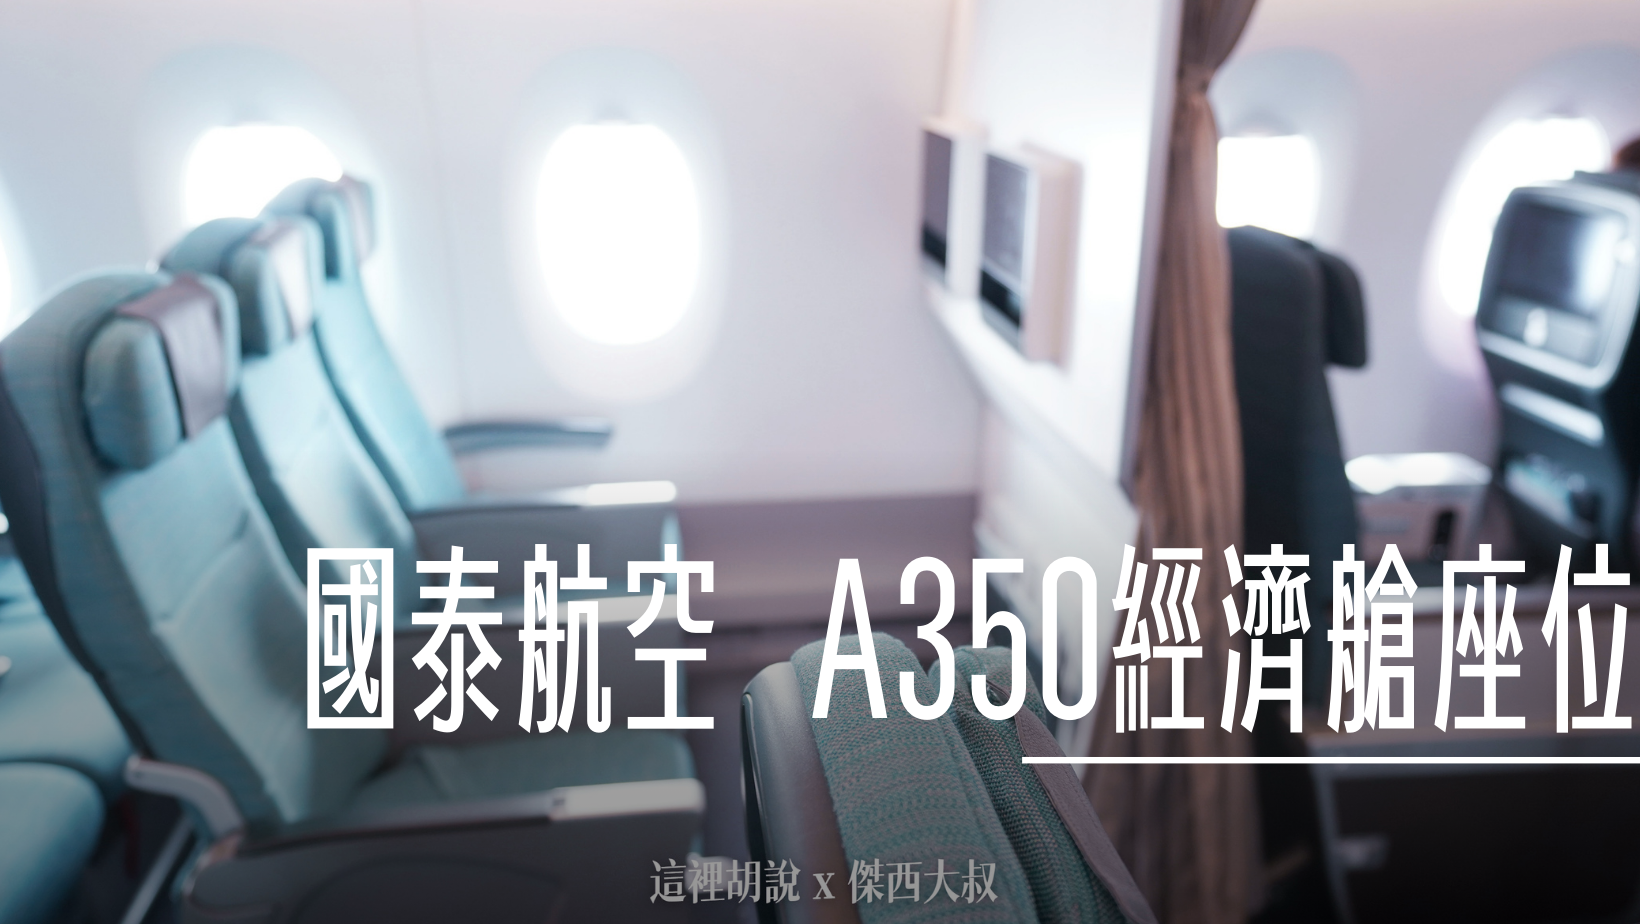 國泰航空 A350 經濟艙開箱 照片記錄 @嘿!部落!